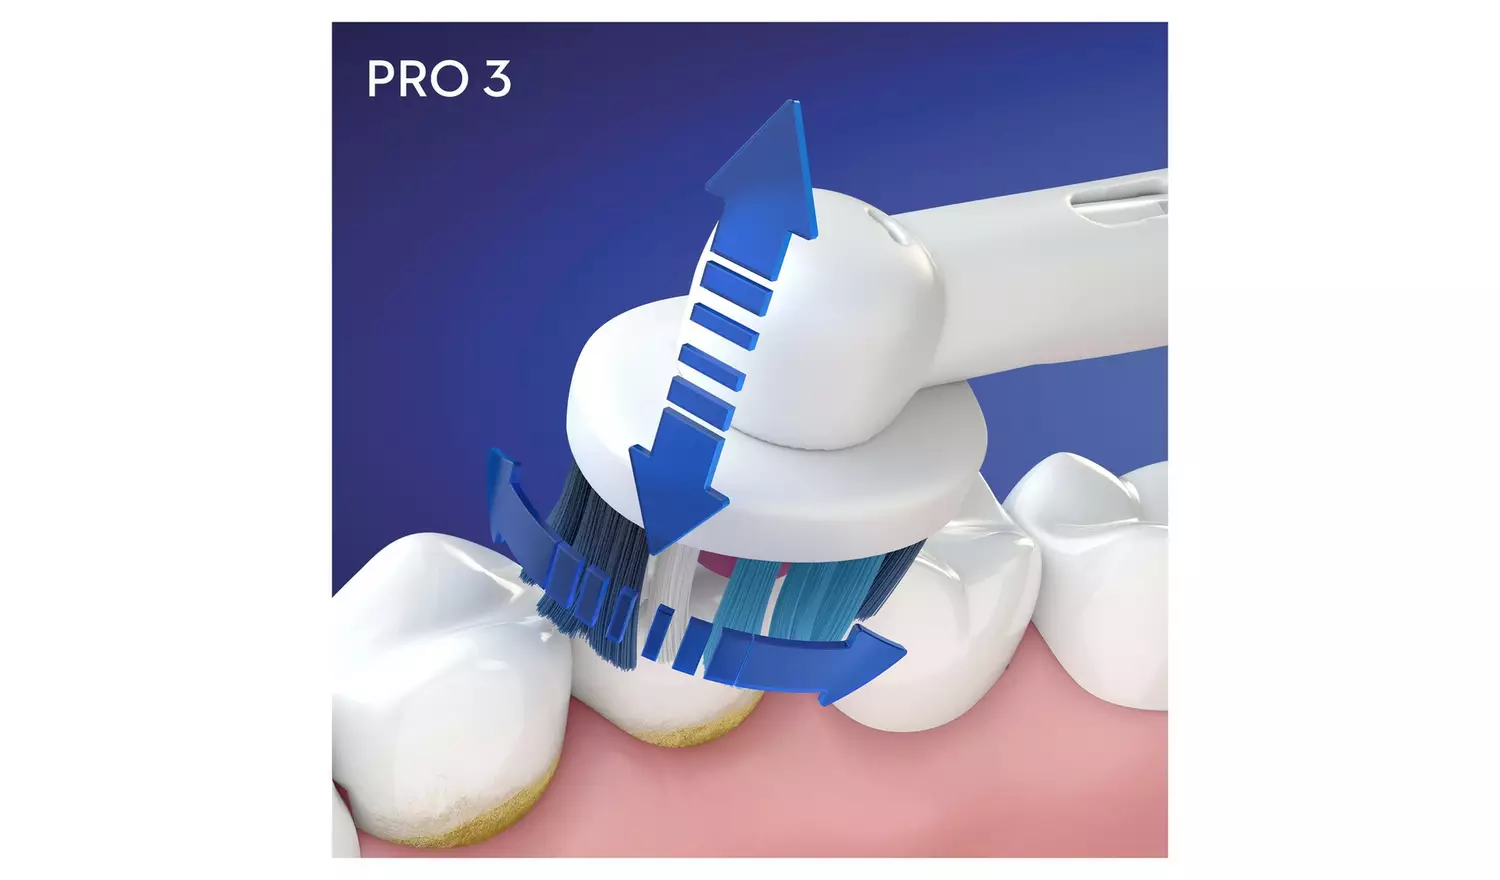 Oral-B Pro 3 Electric Toothbrush - Whitening